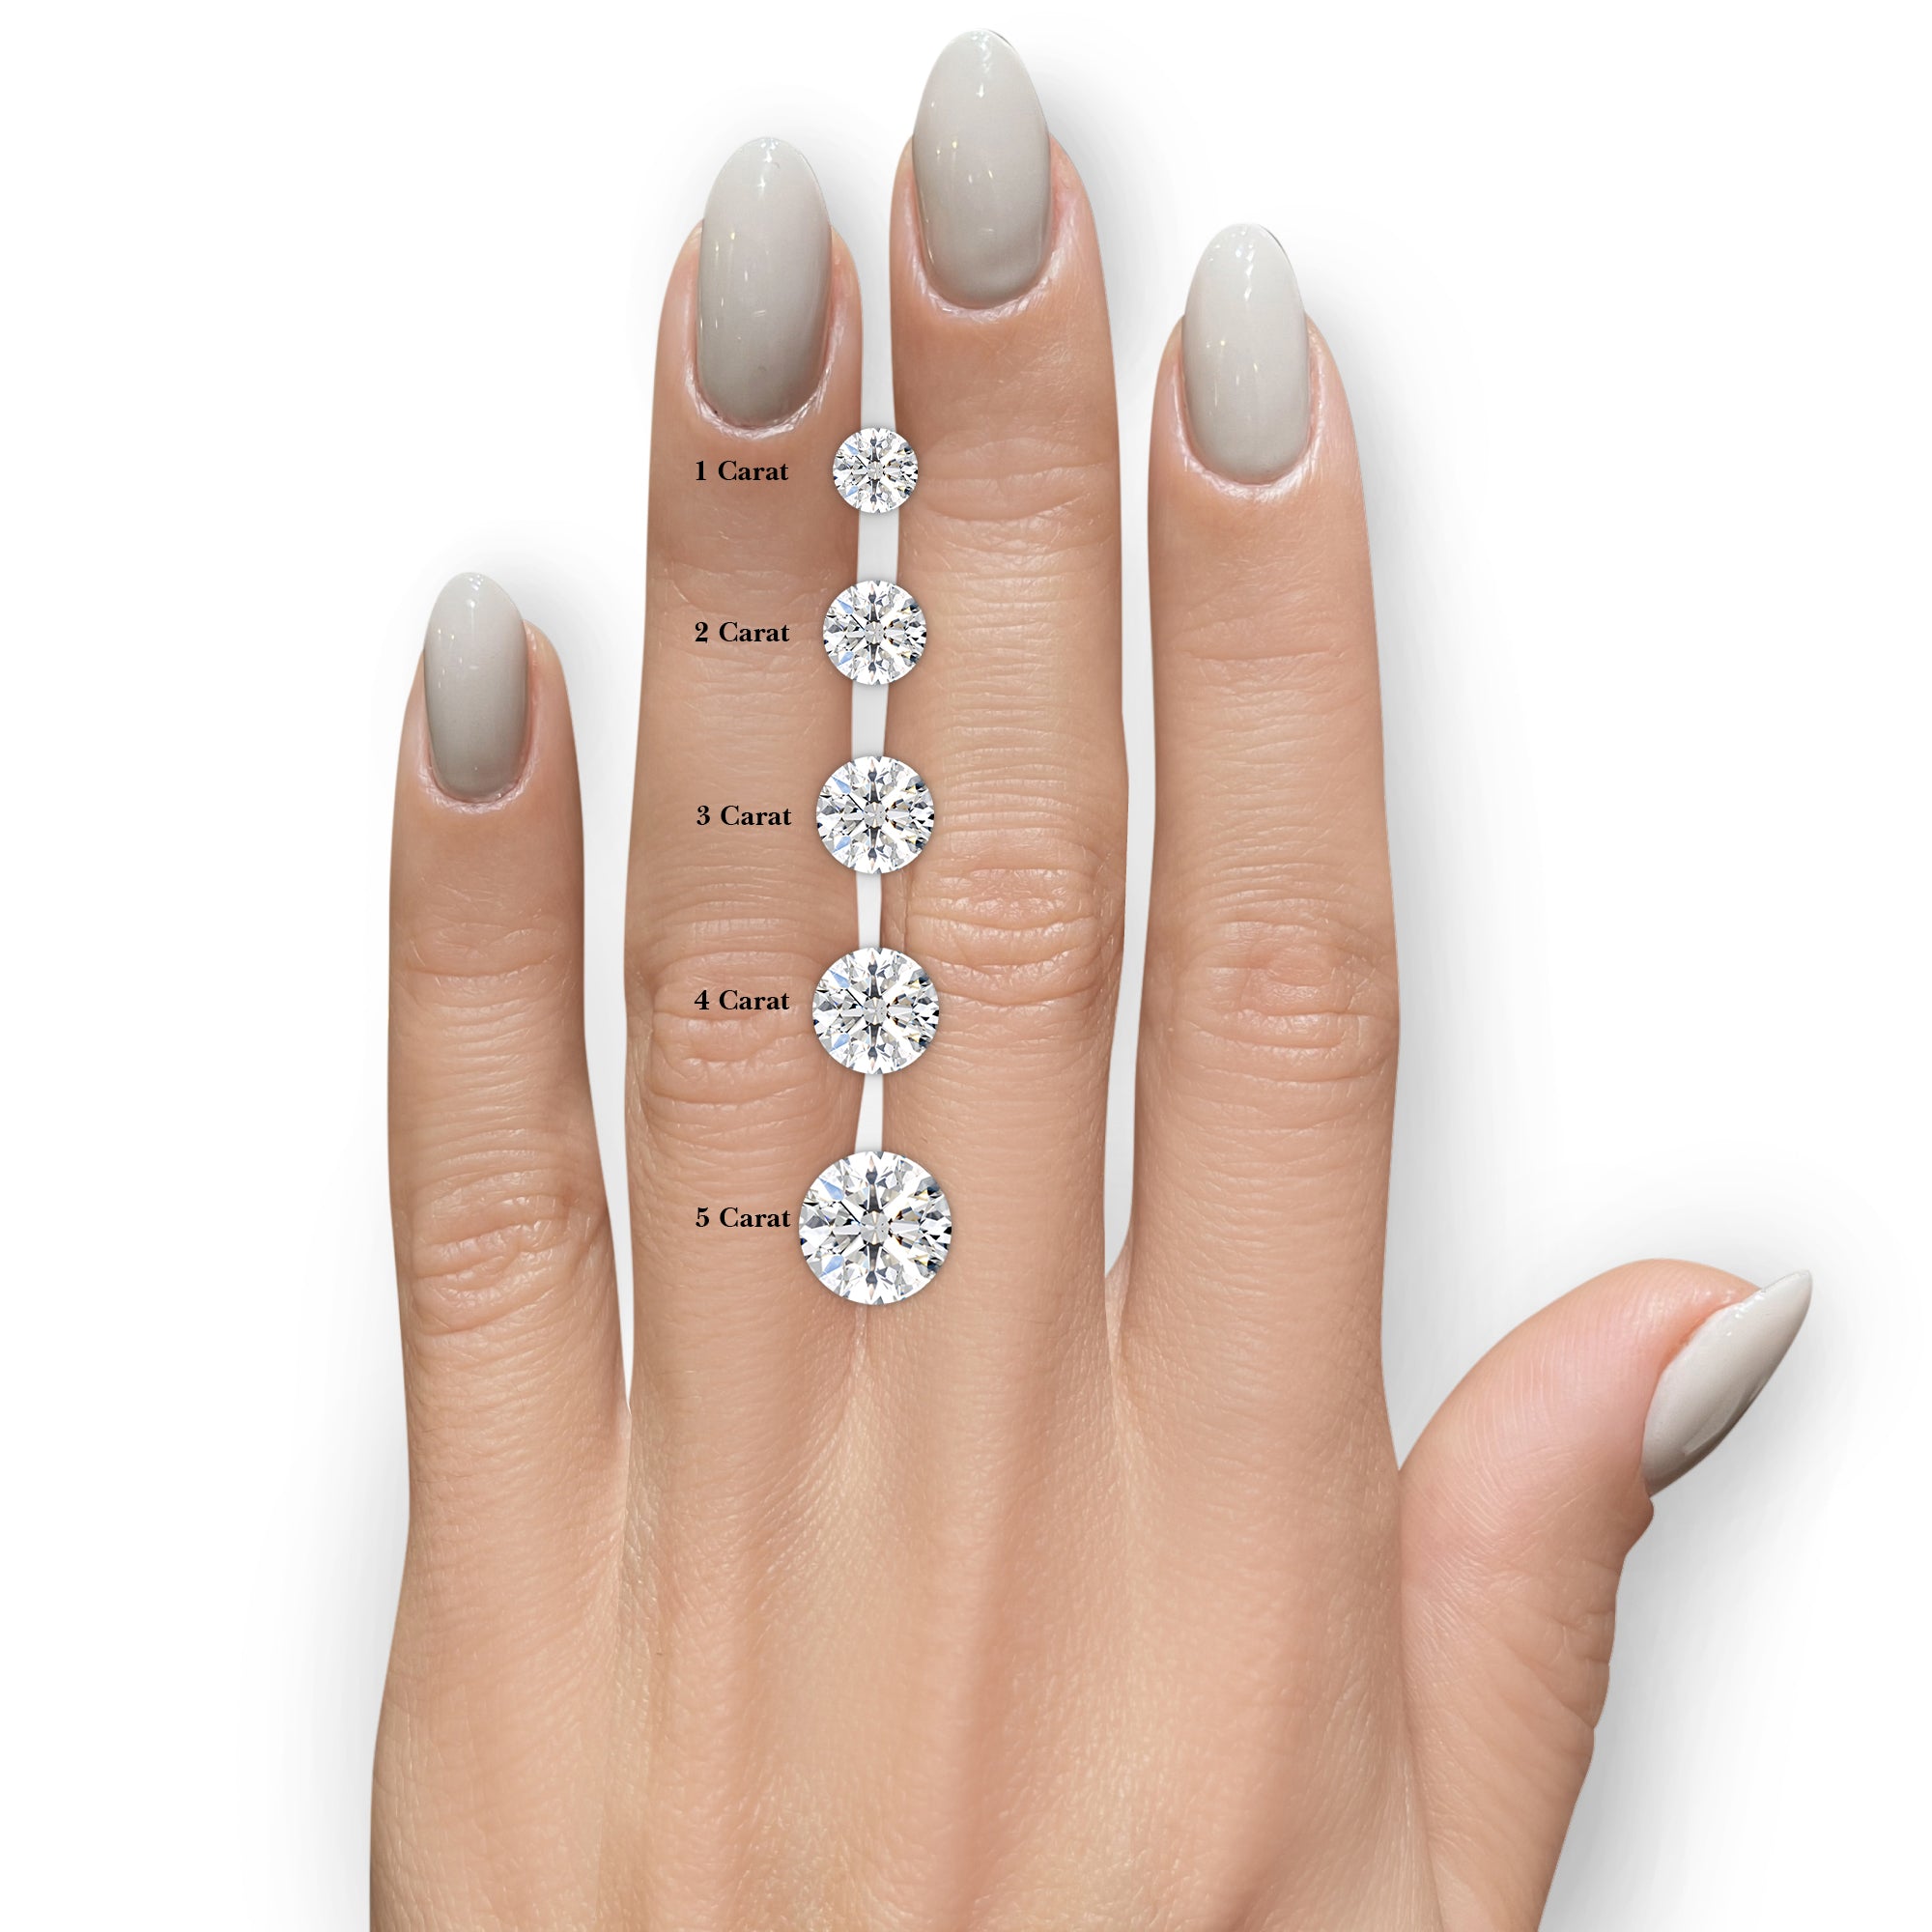 Natalie Lab Grown Diamond Ring -14K Rose Gold